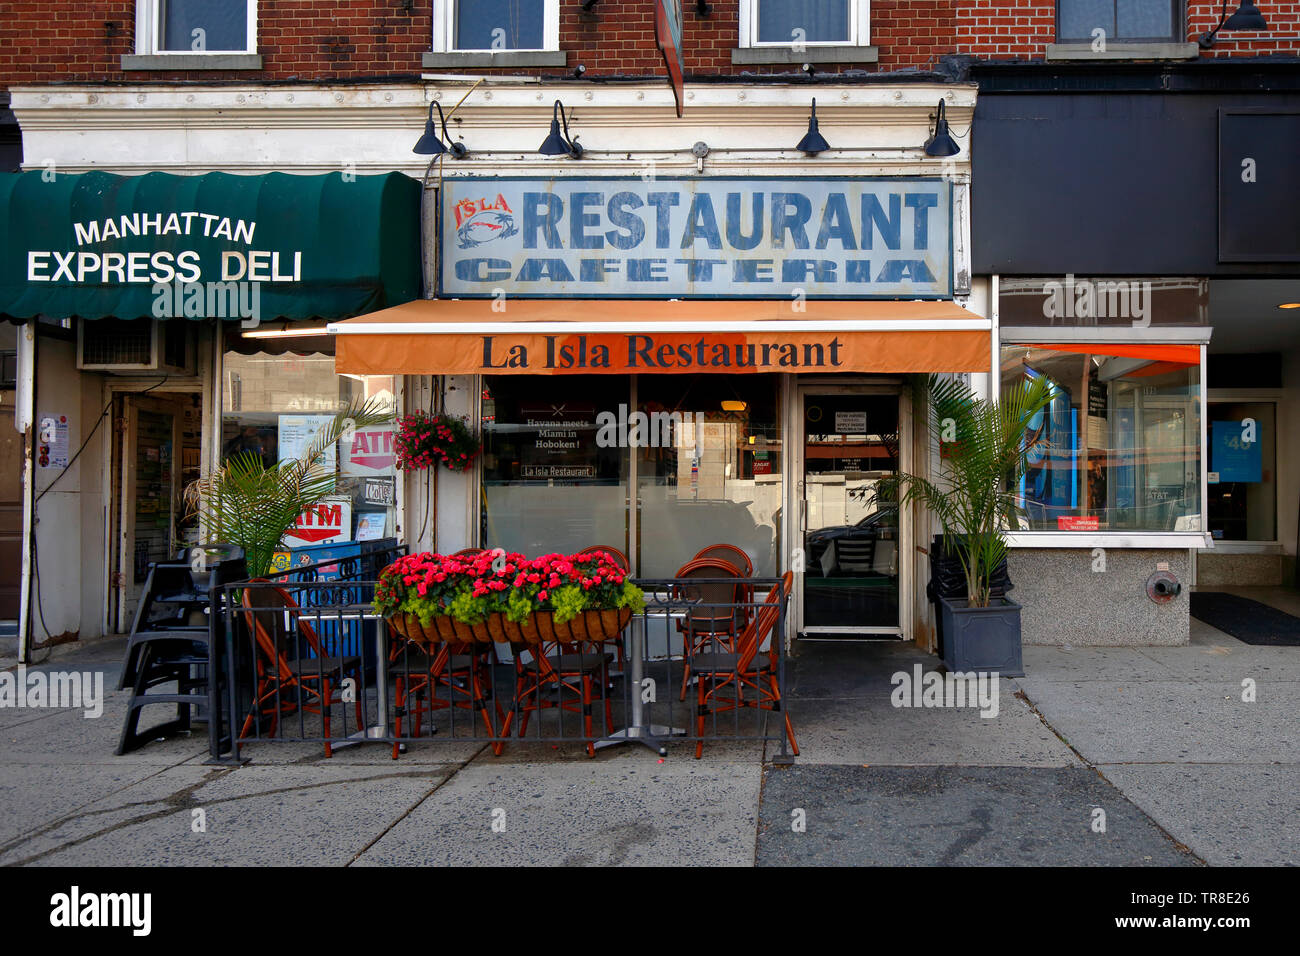 La Isla, 104 Washington St, Hoboken (New Jersey), vitrine d'extérieur d'un restaurant cubain. Banque D'Images